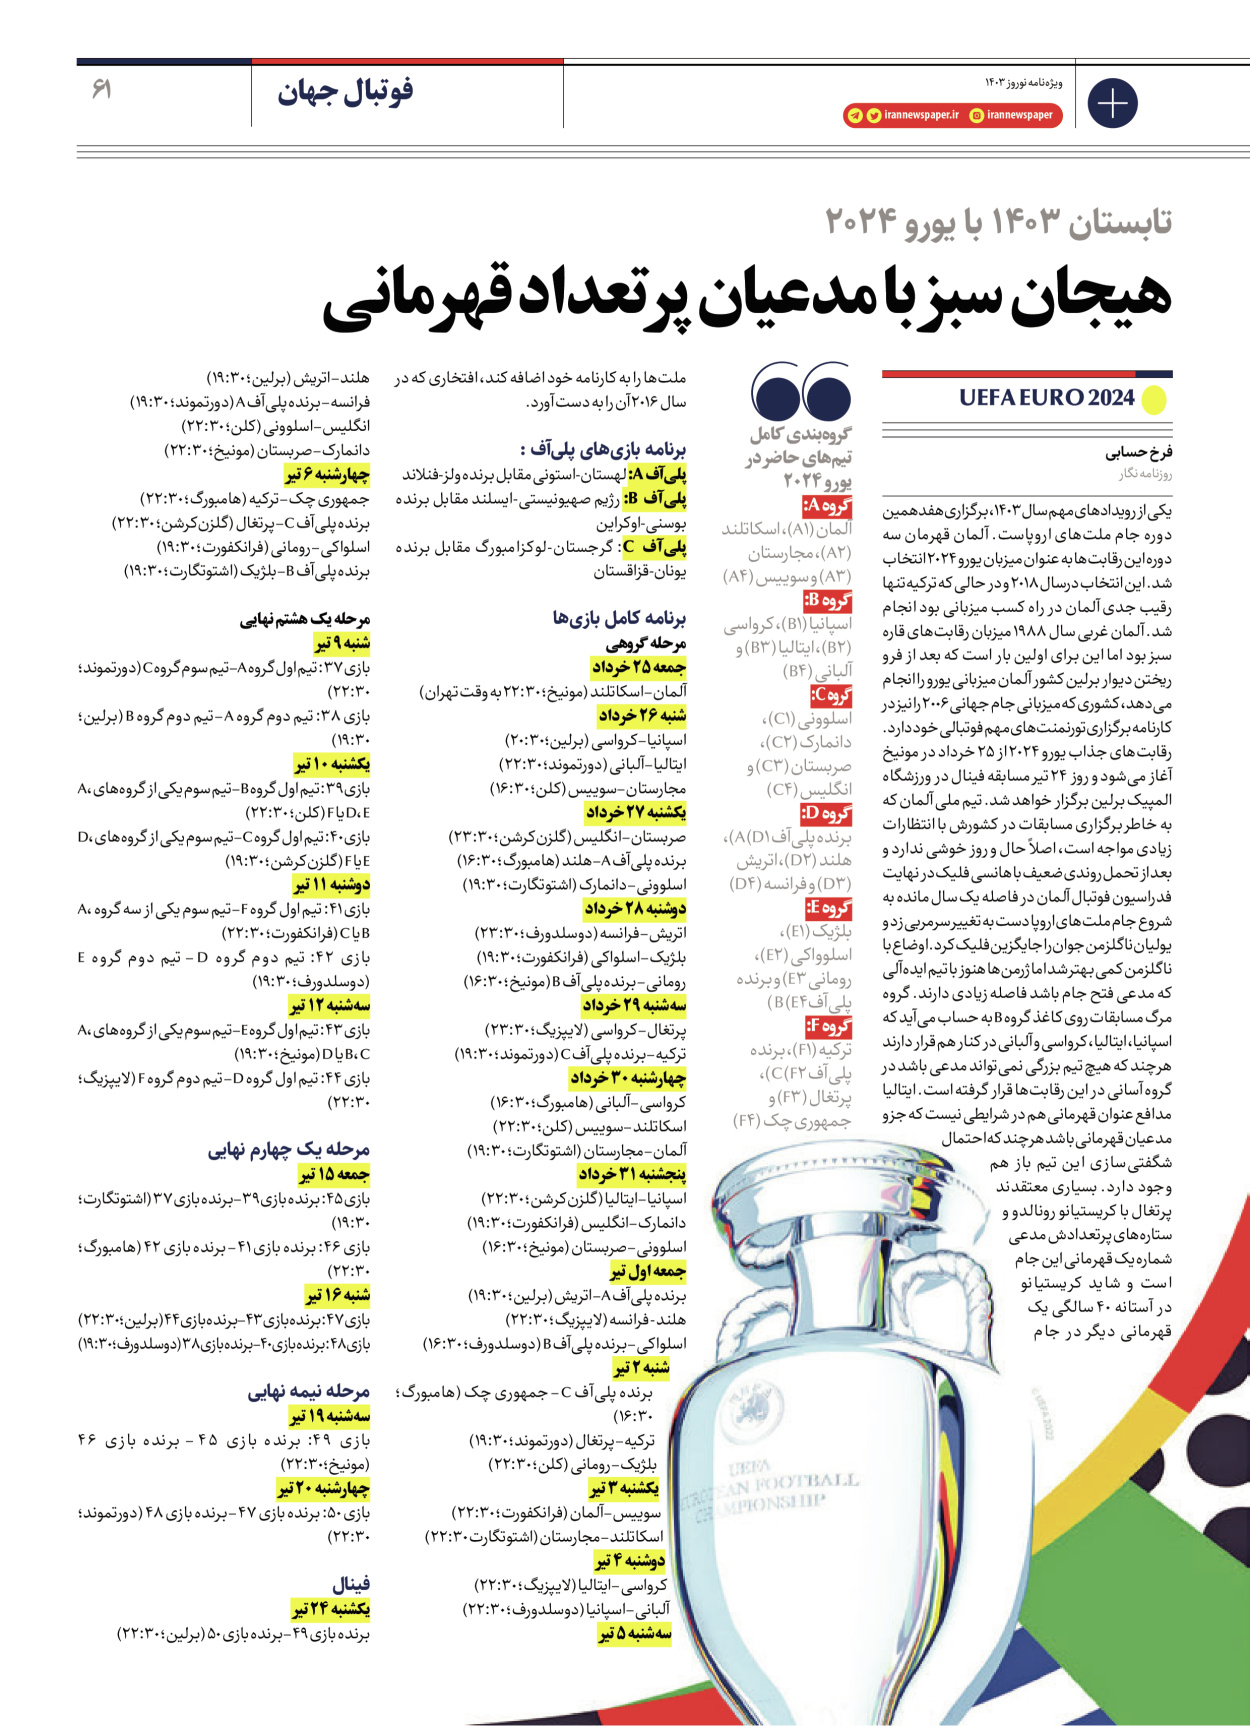 روزنامه ایران - ویژه نامه ویژه نامه ورزشی نوروز ۱۴۰۳ - ۲۲ اسفند ۱۴۰۲ - صفحه ۶۱